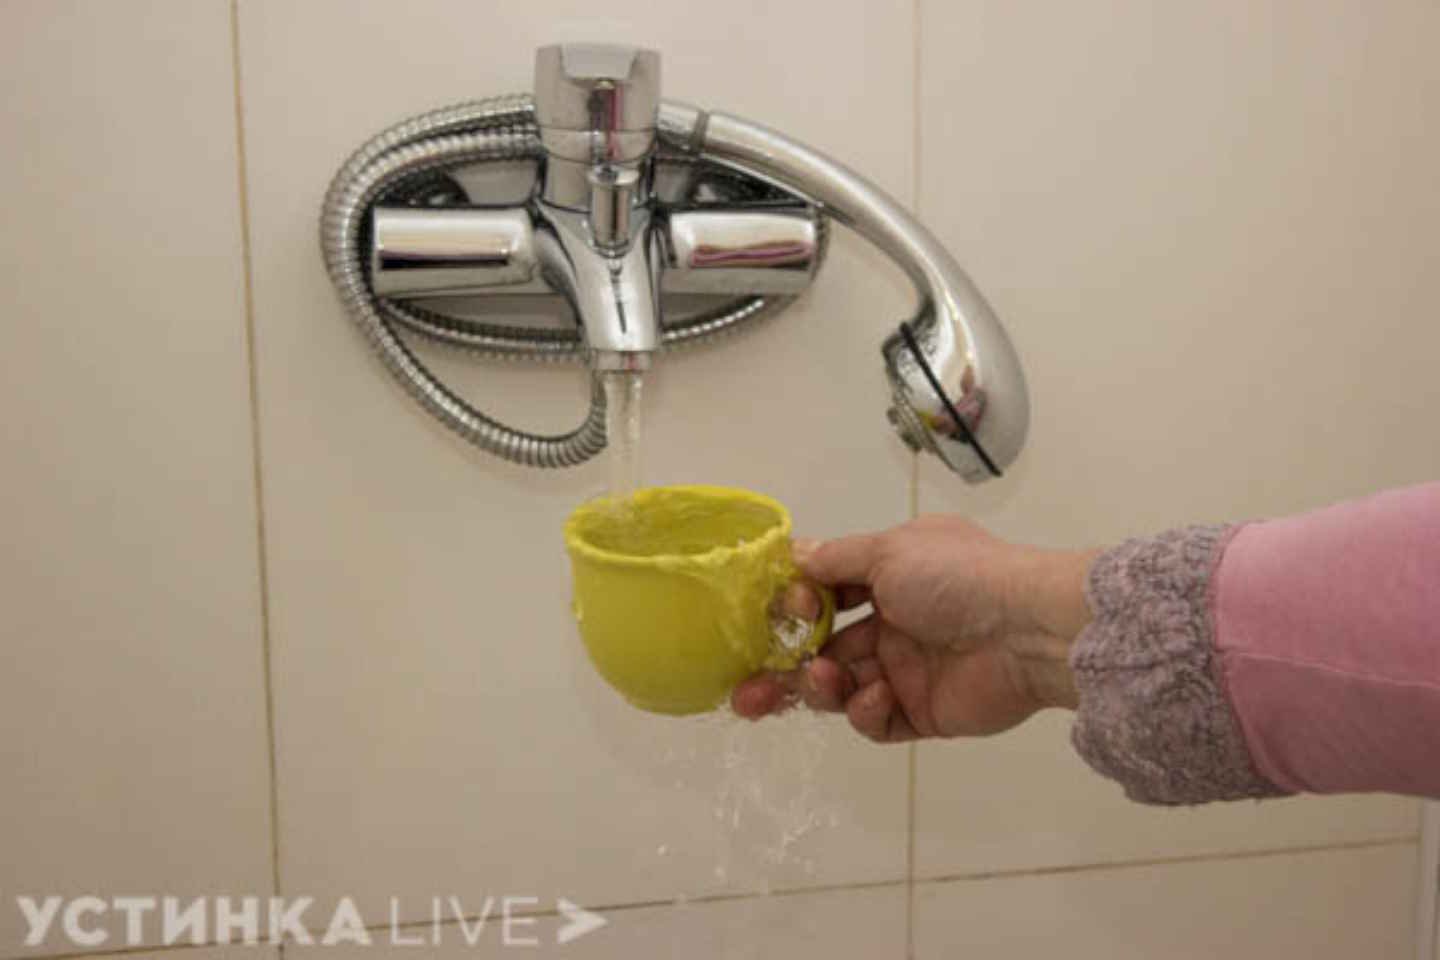 Новости Казахстана / Общество в Казахстане / Качество питьевой воды в Казахстане назвали отвечающим нормам